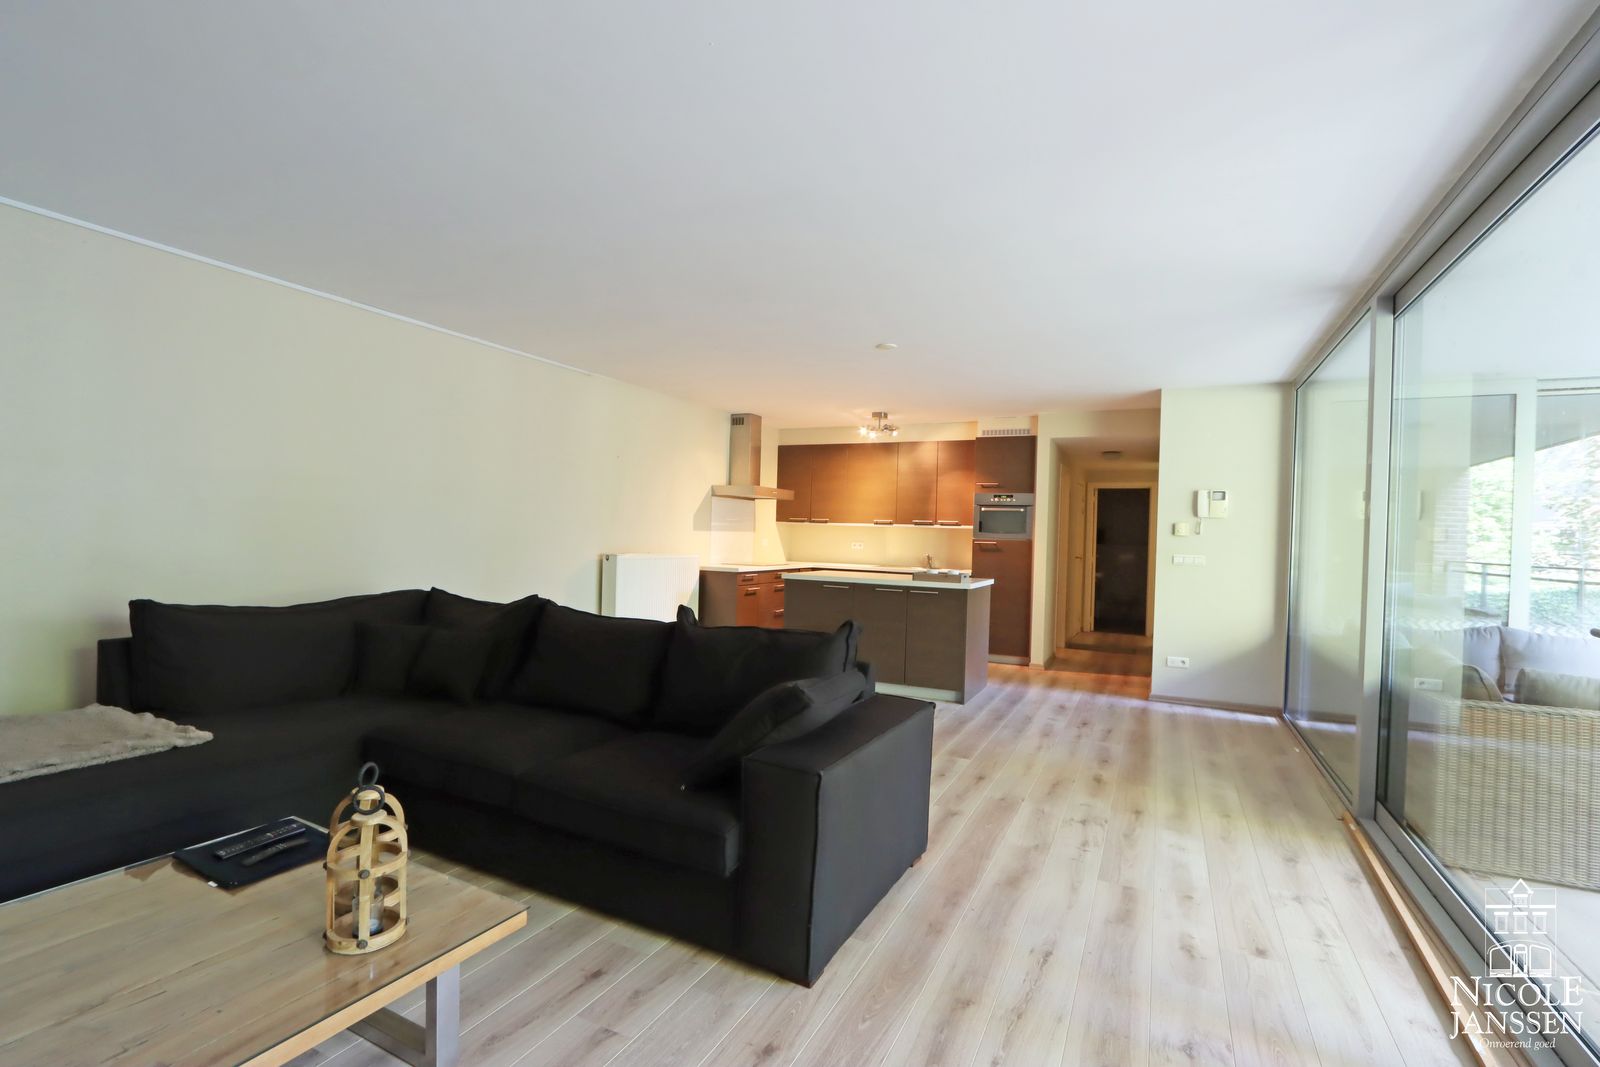 Nicole Janssen appartement te koop - Acht Meilaan 31A b 4 (woonkamer foto 2)_bewerkt-1.jpg